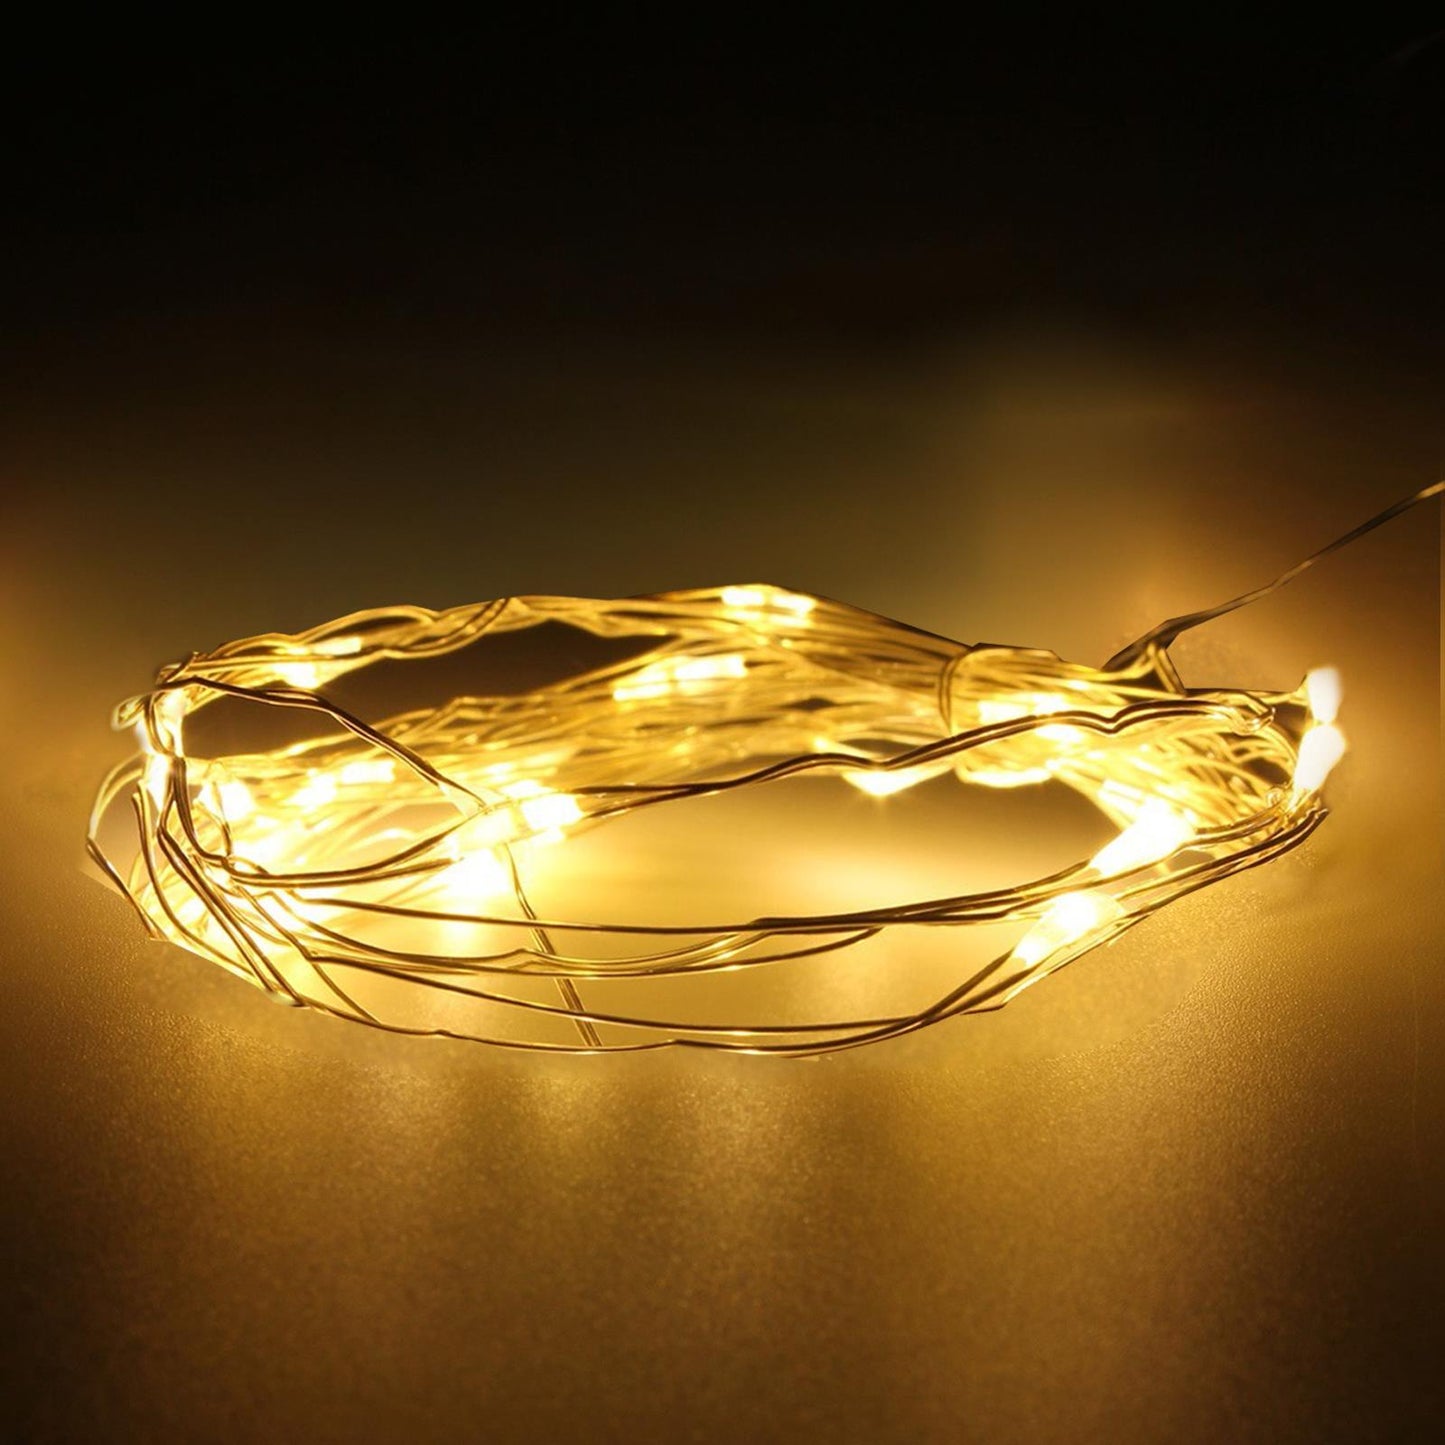 Rustic Copper Wire Fairy Lights for Decor